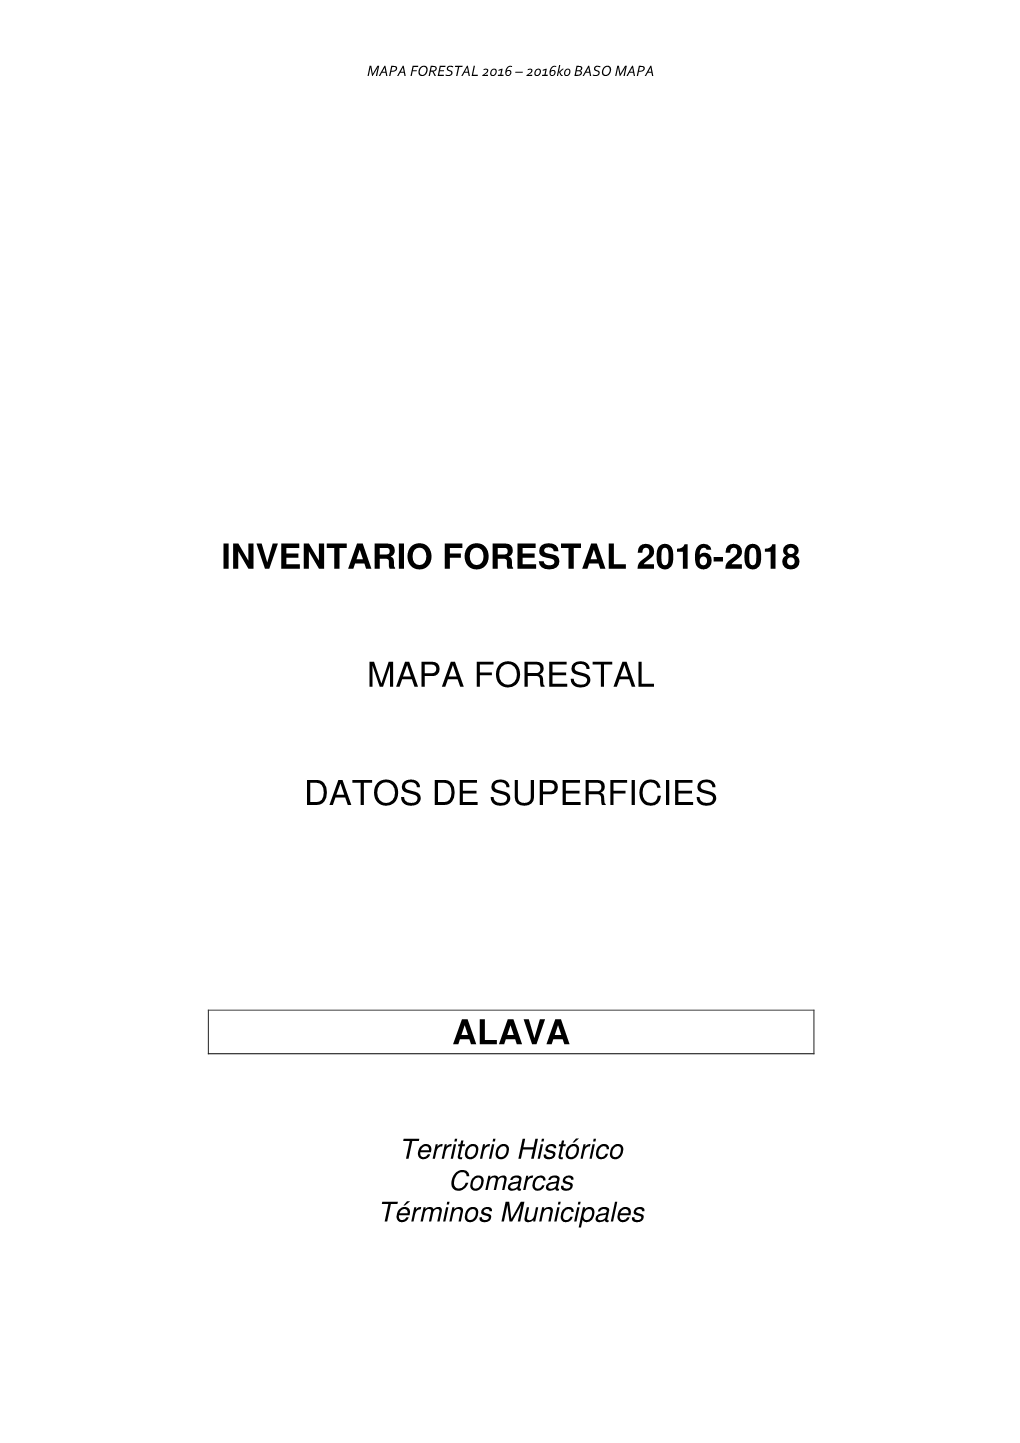 Inventario Forestal De 2016 De Álava